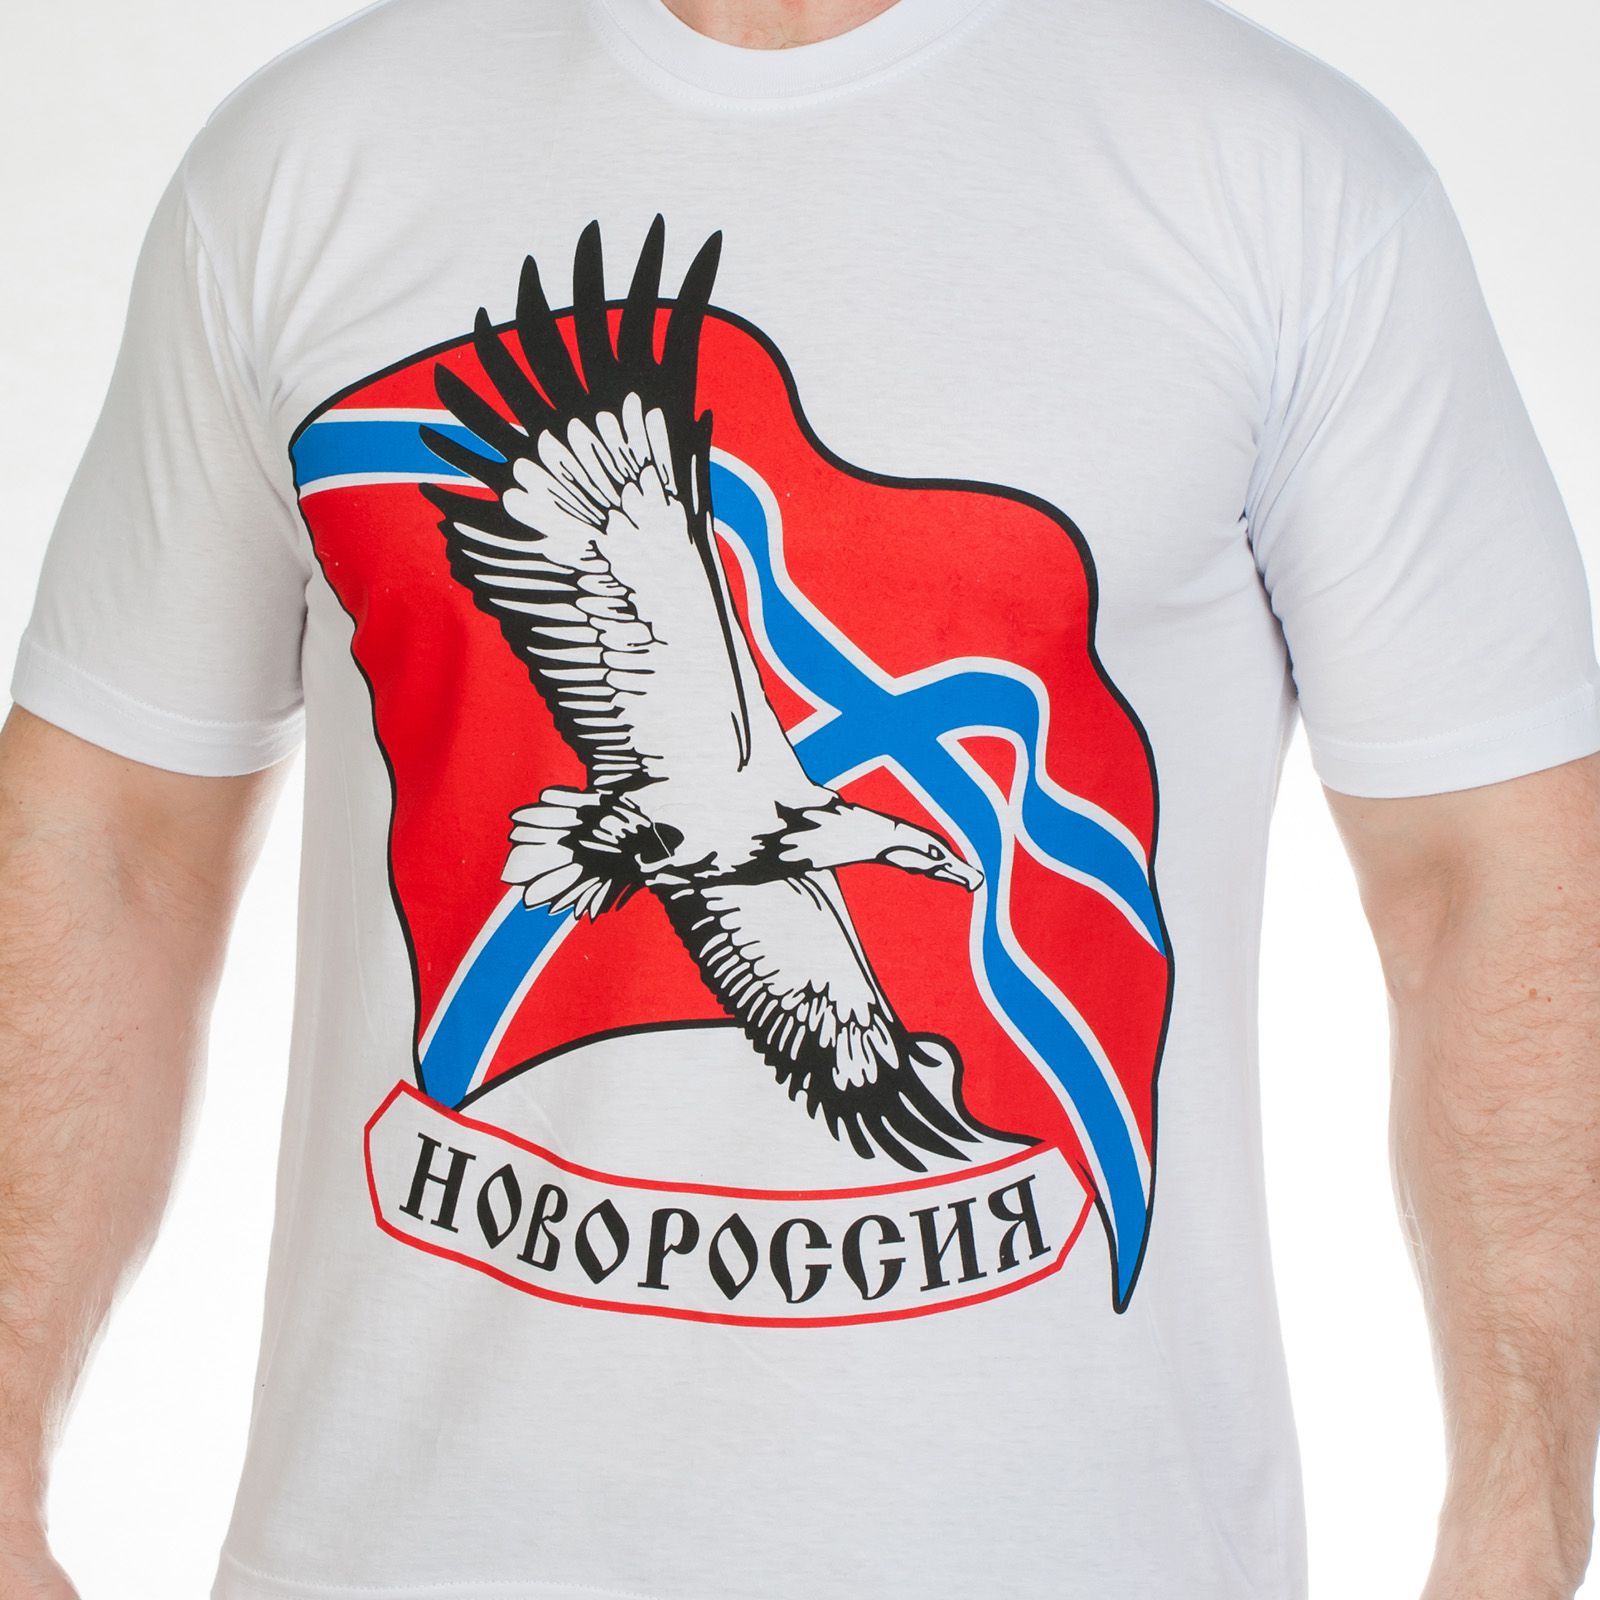 Белая нарядная футболка с символикой Новороссии – за Донецк, За Луганск! АЙ, КАКАЯ ЦЕНА! №Р1 ОСТАТКИ СЛАДКИ!!!!